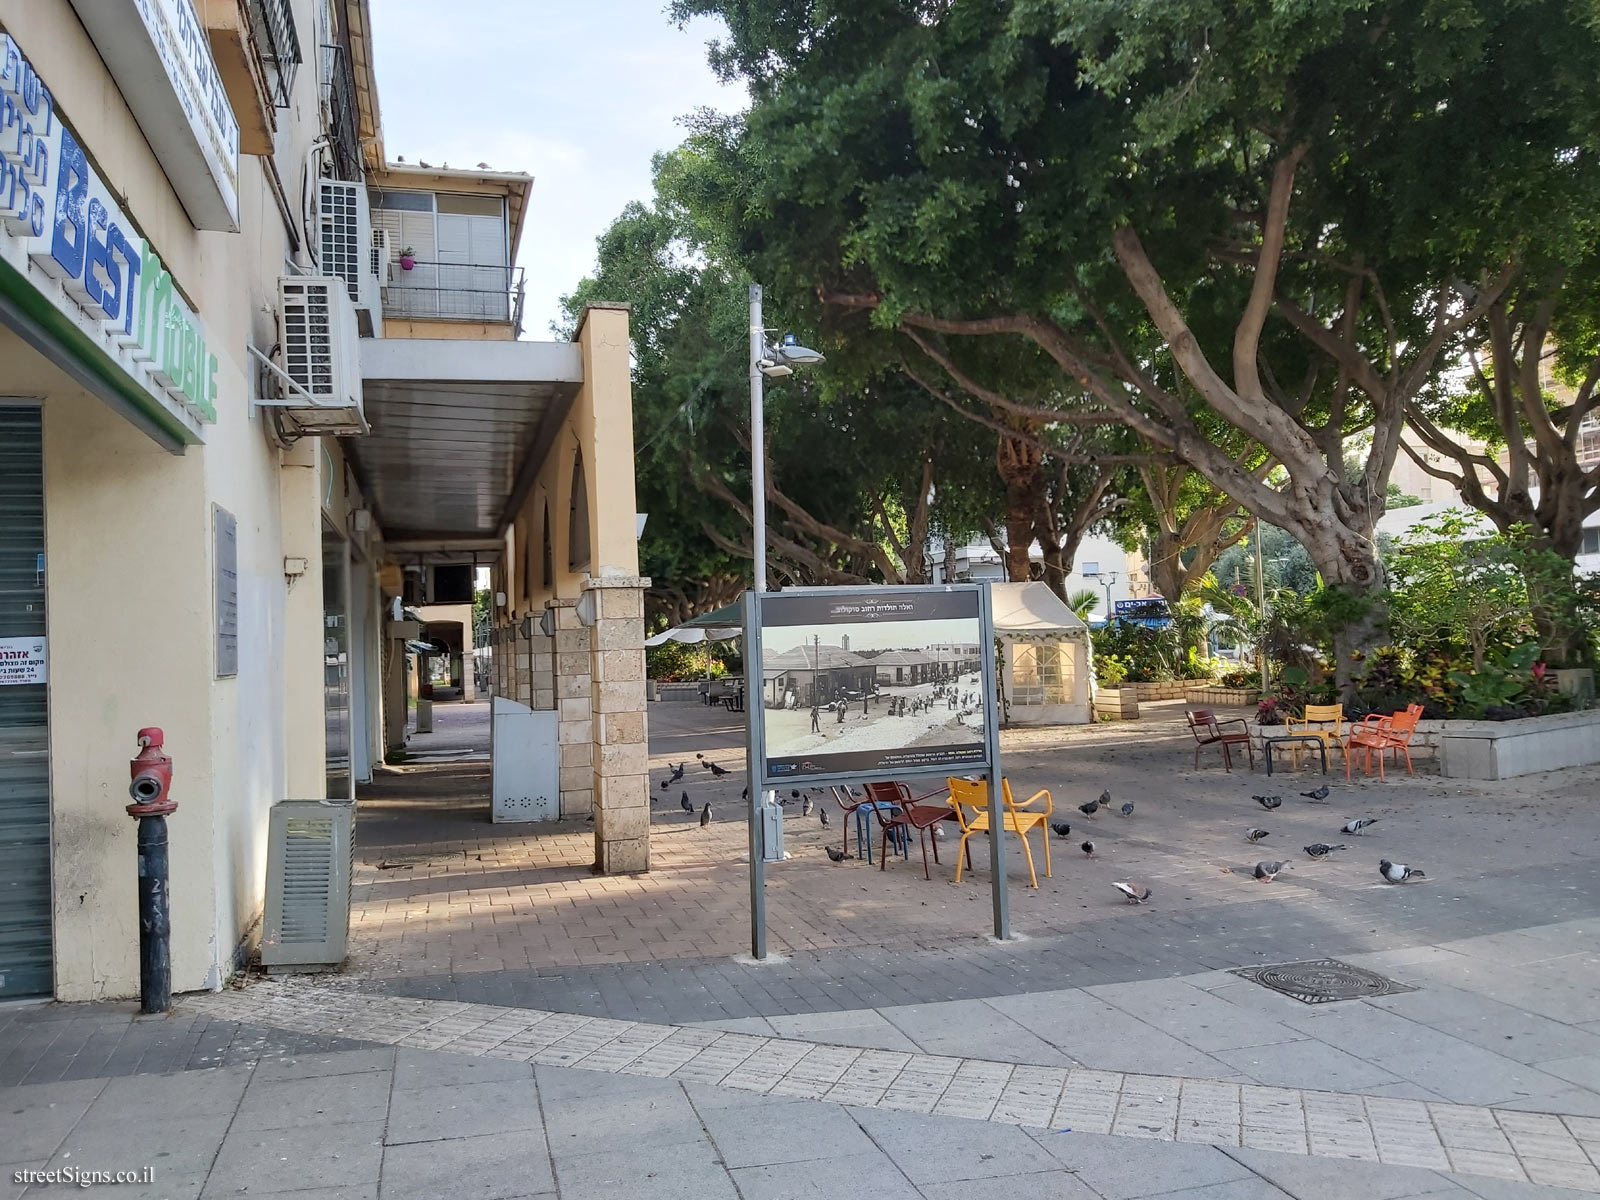 Egged Bus Station Herzliya - Sderot Hen 1, Hertsliya, Israel